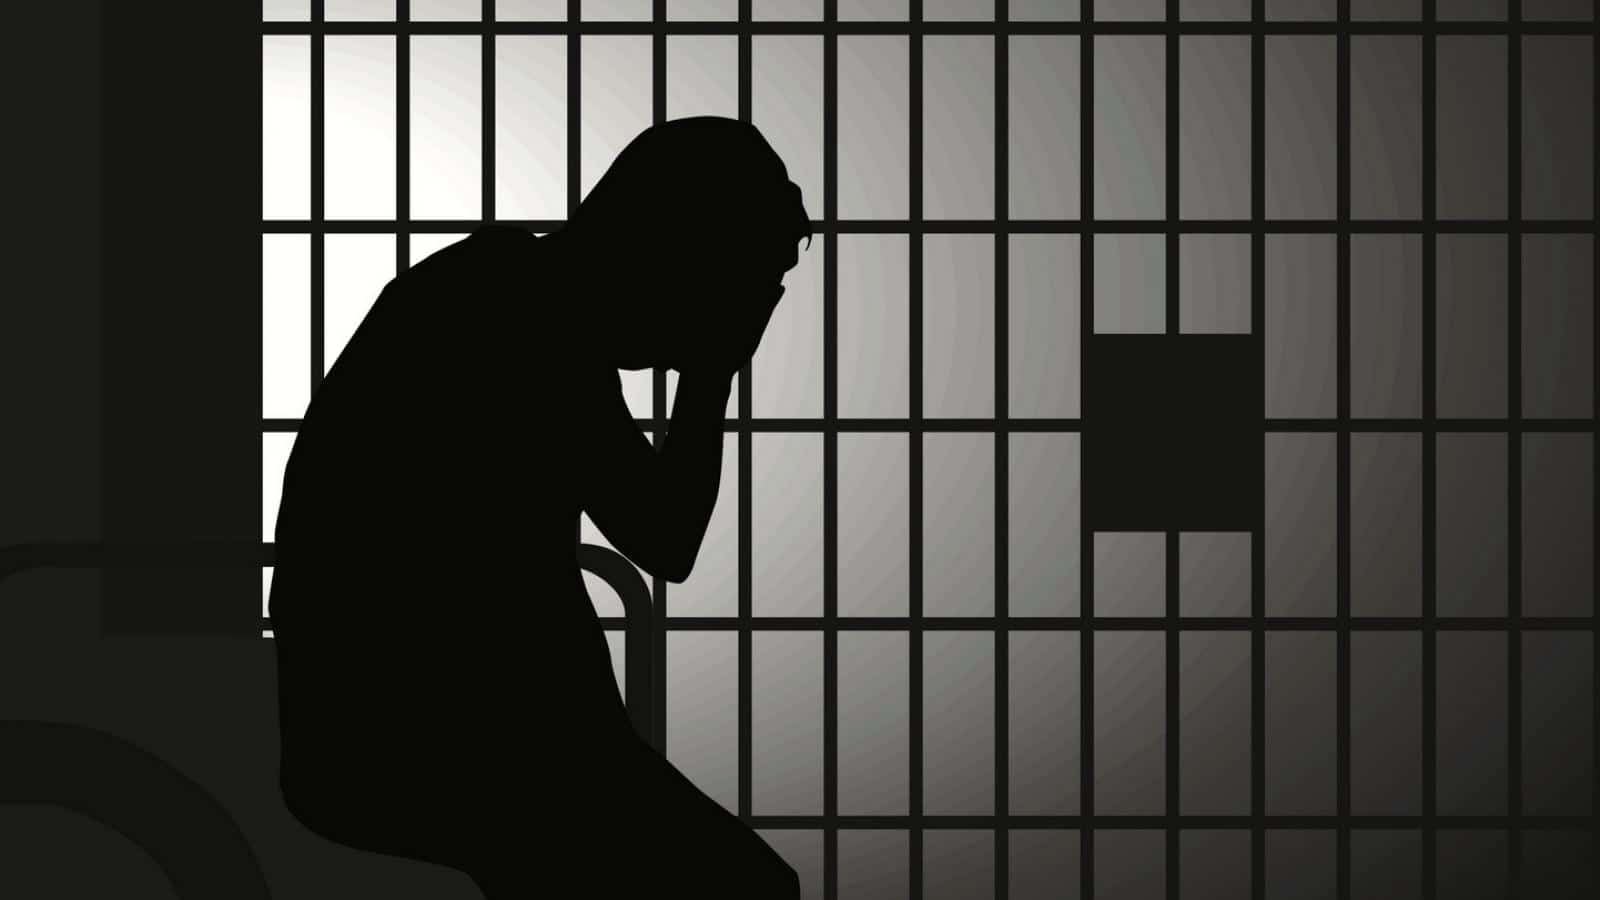 Co-Founder BitFunder Mendapat Hukuman Penjara Karena Kasus Ini